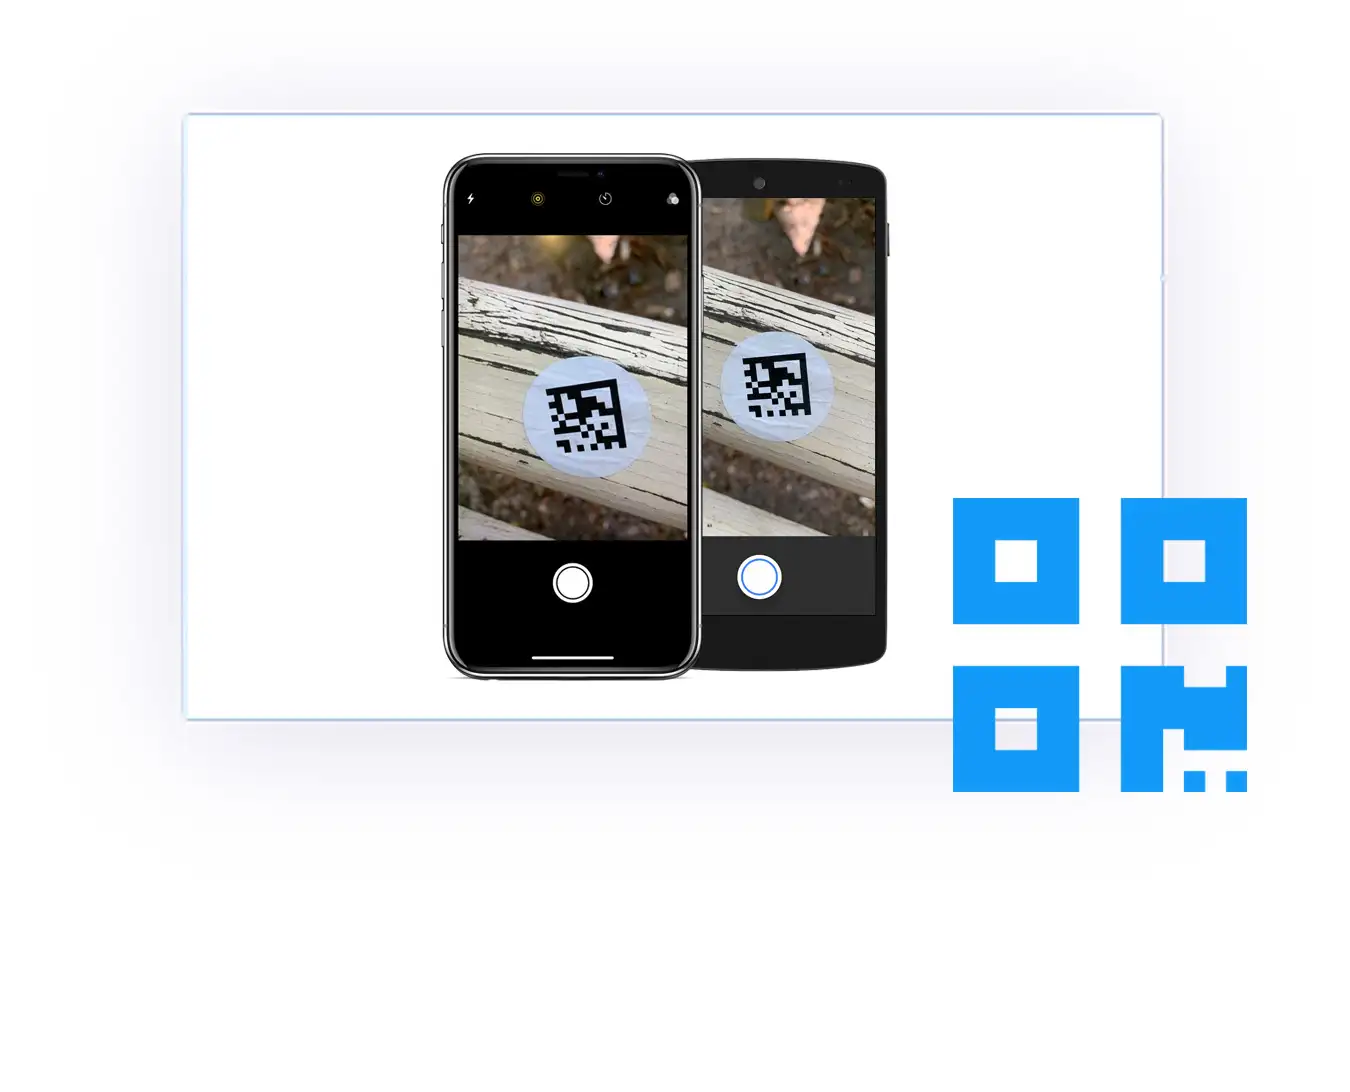 Numériser les codes QR dans votre application WebView facilement